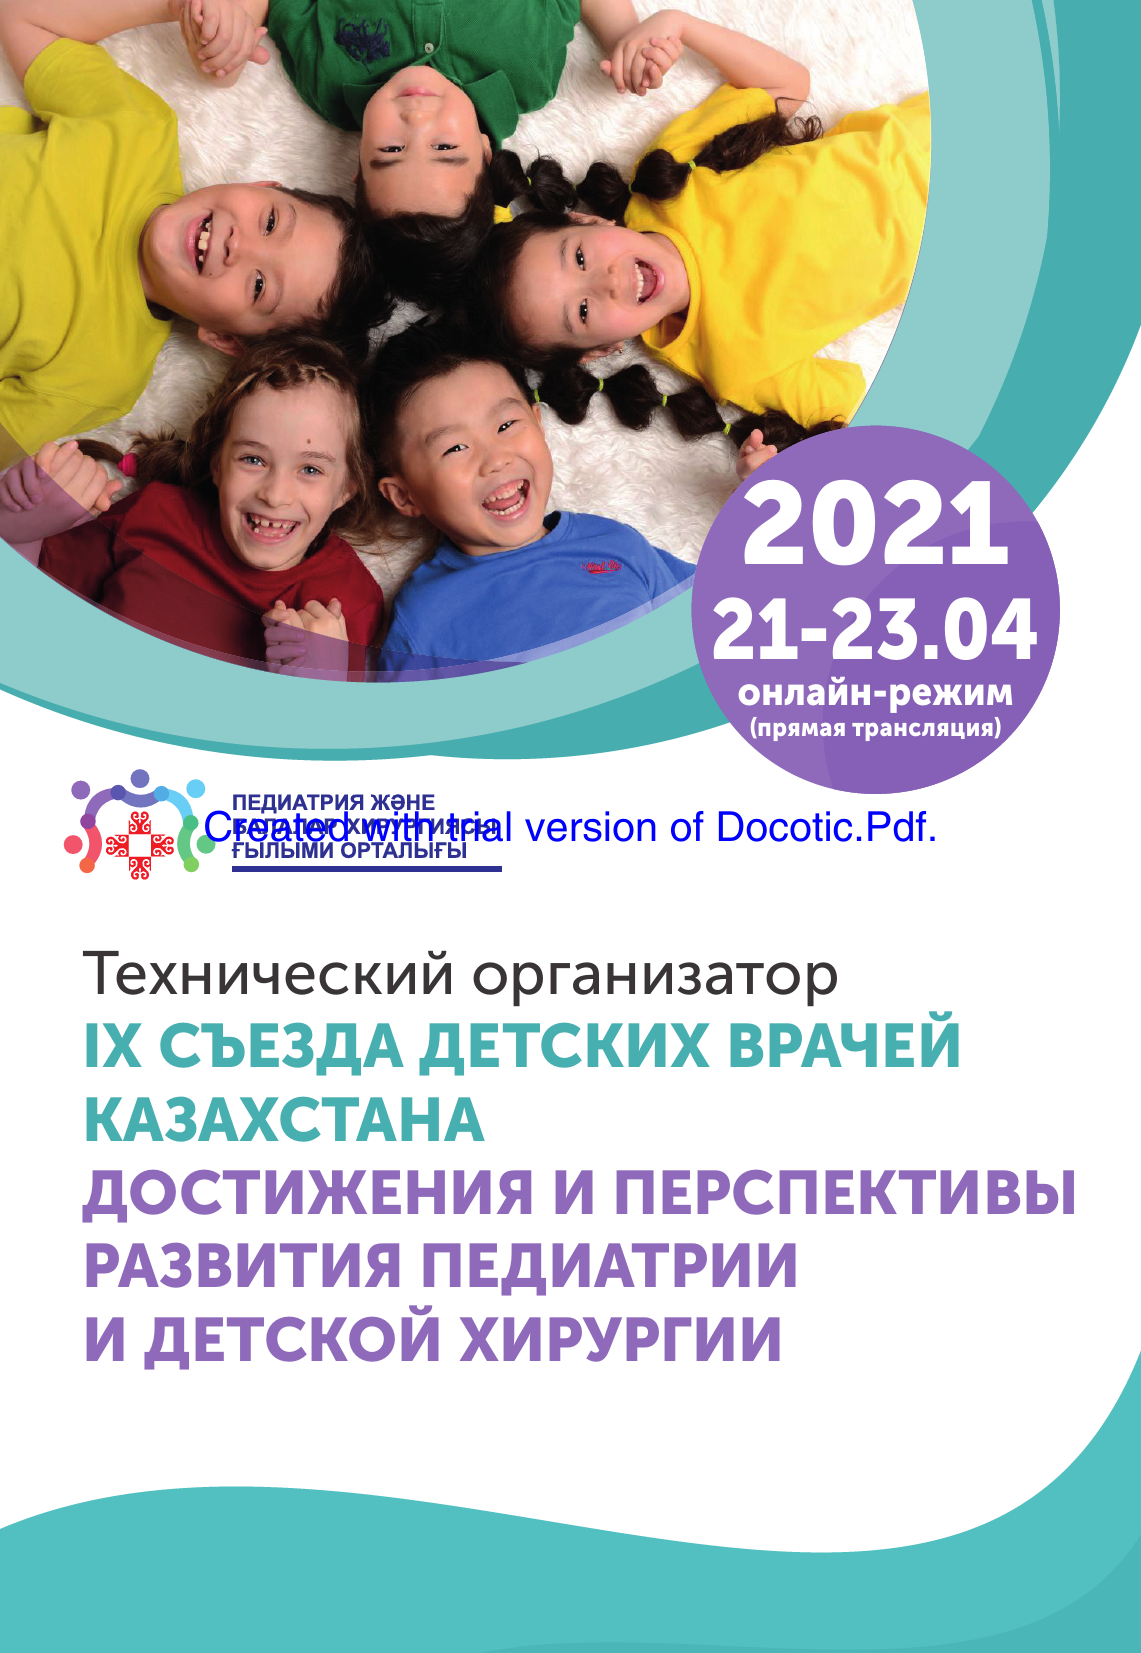 IX Съезд детских врачей Казахстана, онлайн, прямая трансляция